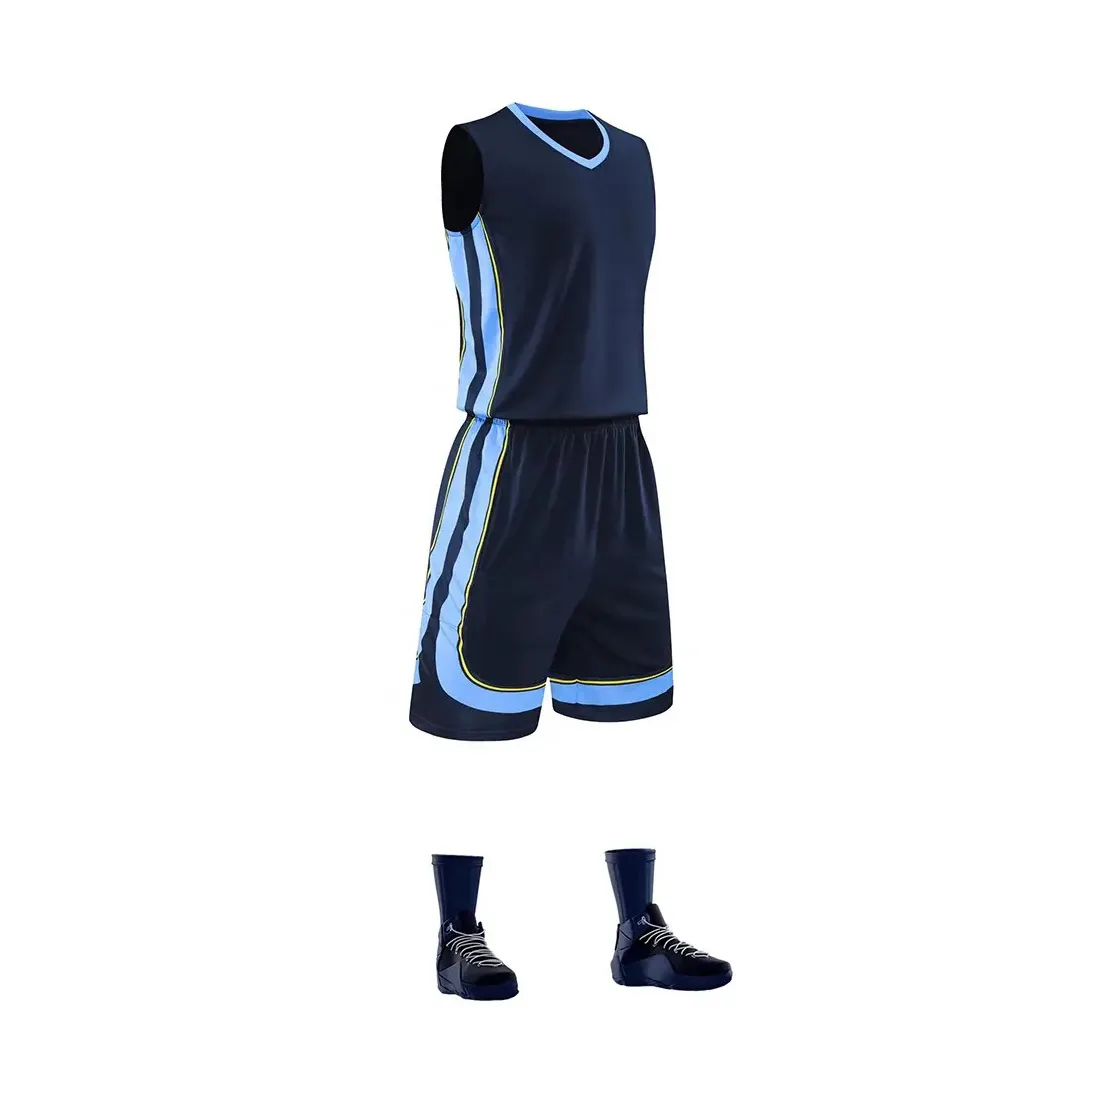 Venta al por mayor personalizado nuevo diseño uniforme de baloncesto diseño reversible su propio nombre y número logotipo uniforme de baloncesto para hombres